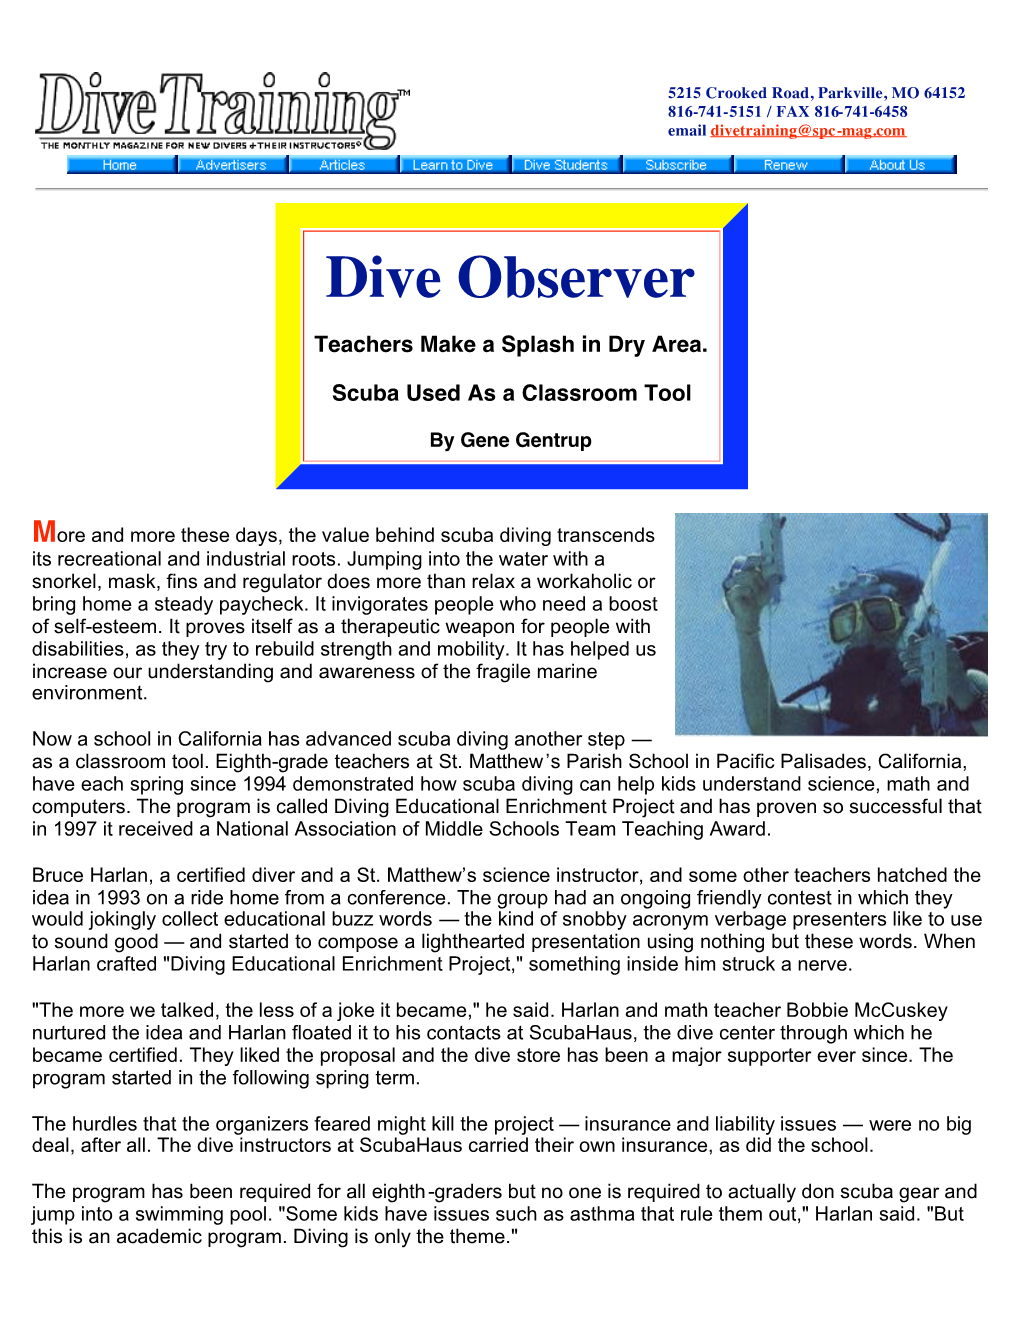 Dive Observer